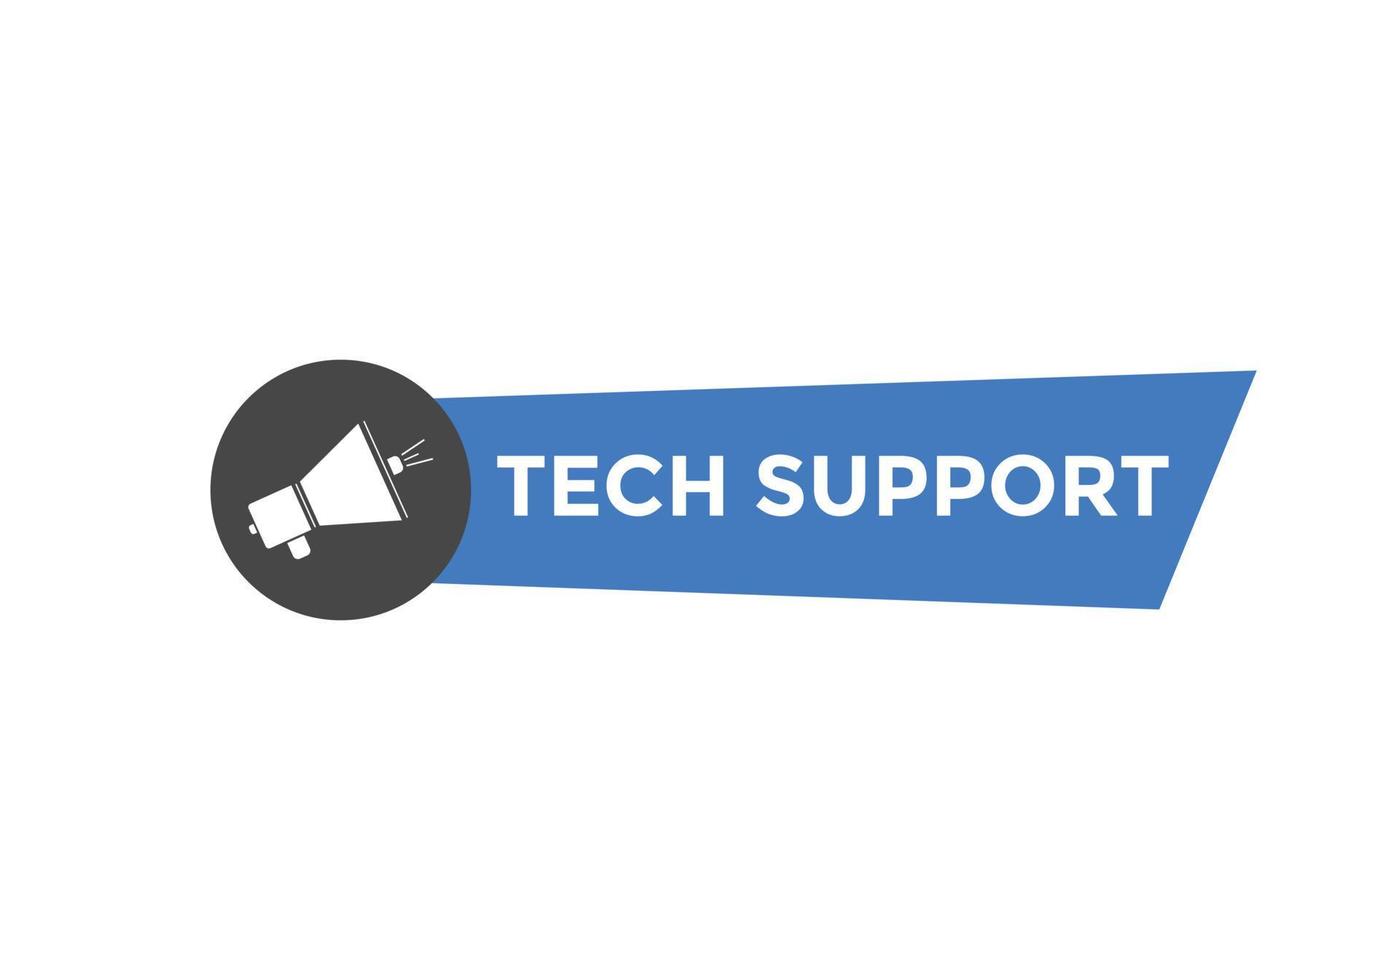 botón de texto de soporte técnico. burbuja de diálogo. banner web colorido de soporte técnico. ilustración vectorial vector